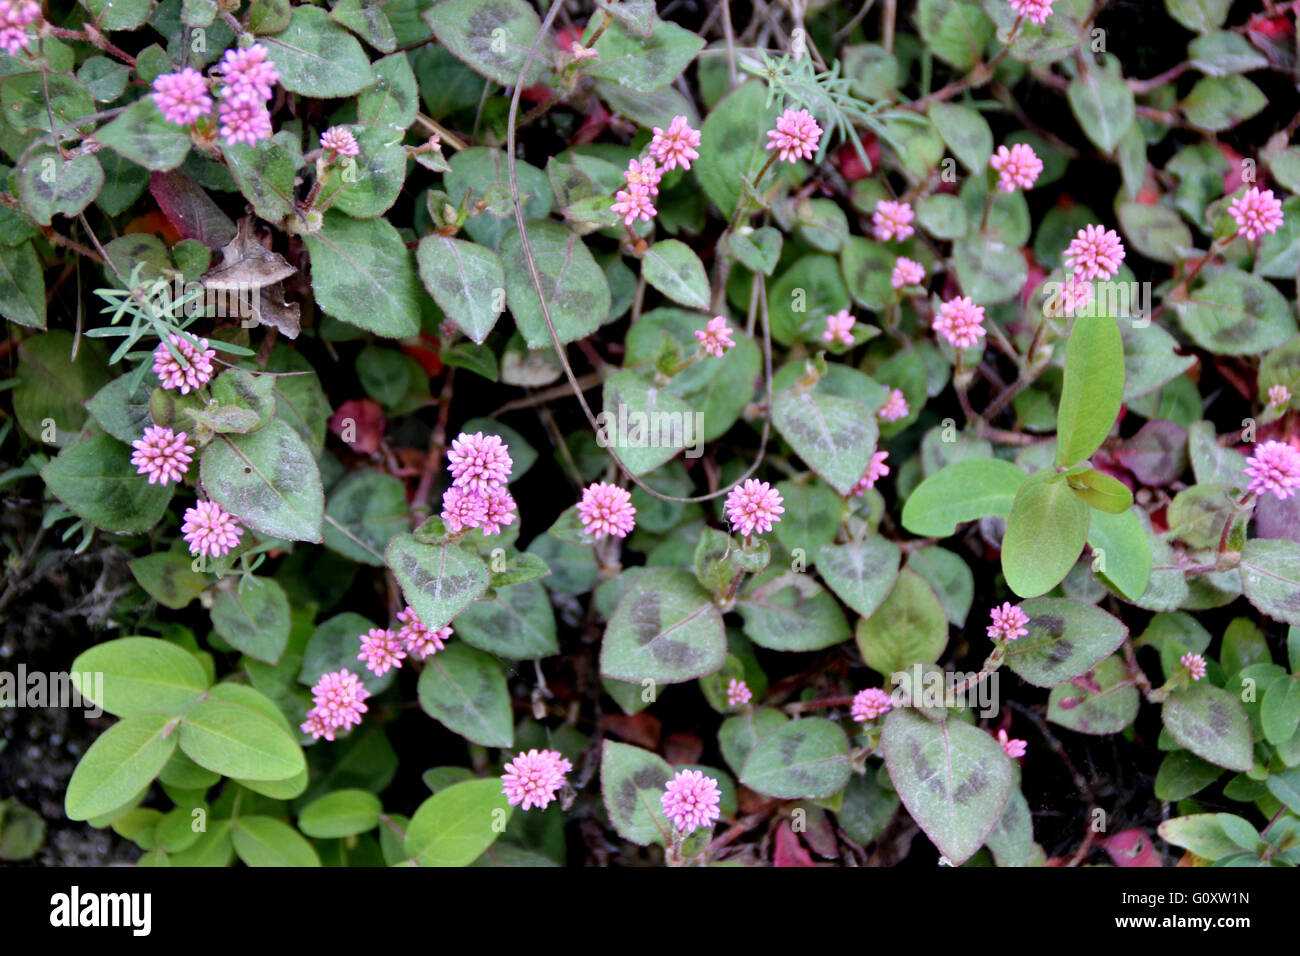 Persicaria capitata, famille Polygonaceae, herbe vivace rampante à feuilles ovales avec deux taches pourpres et des fleurs roses Banque D'Images